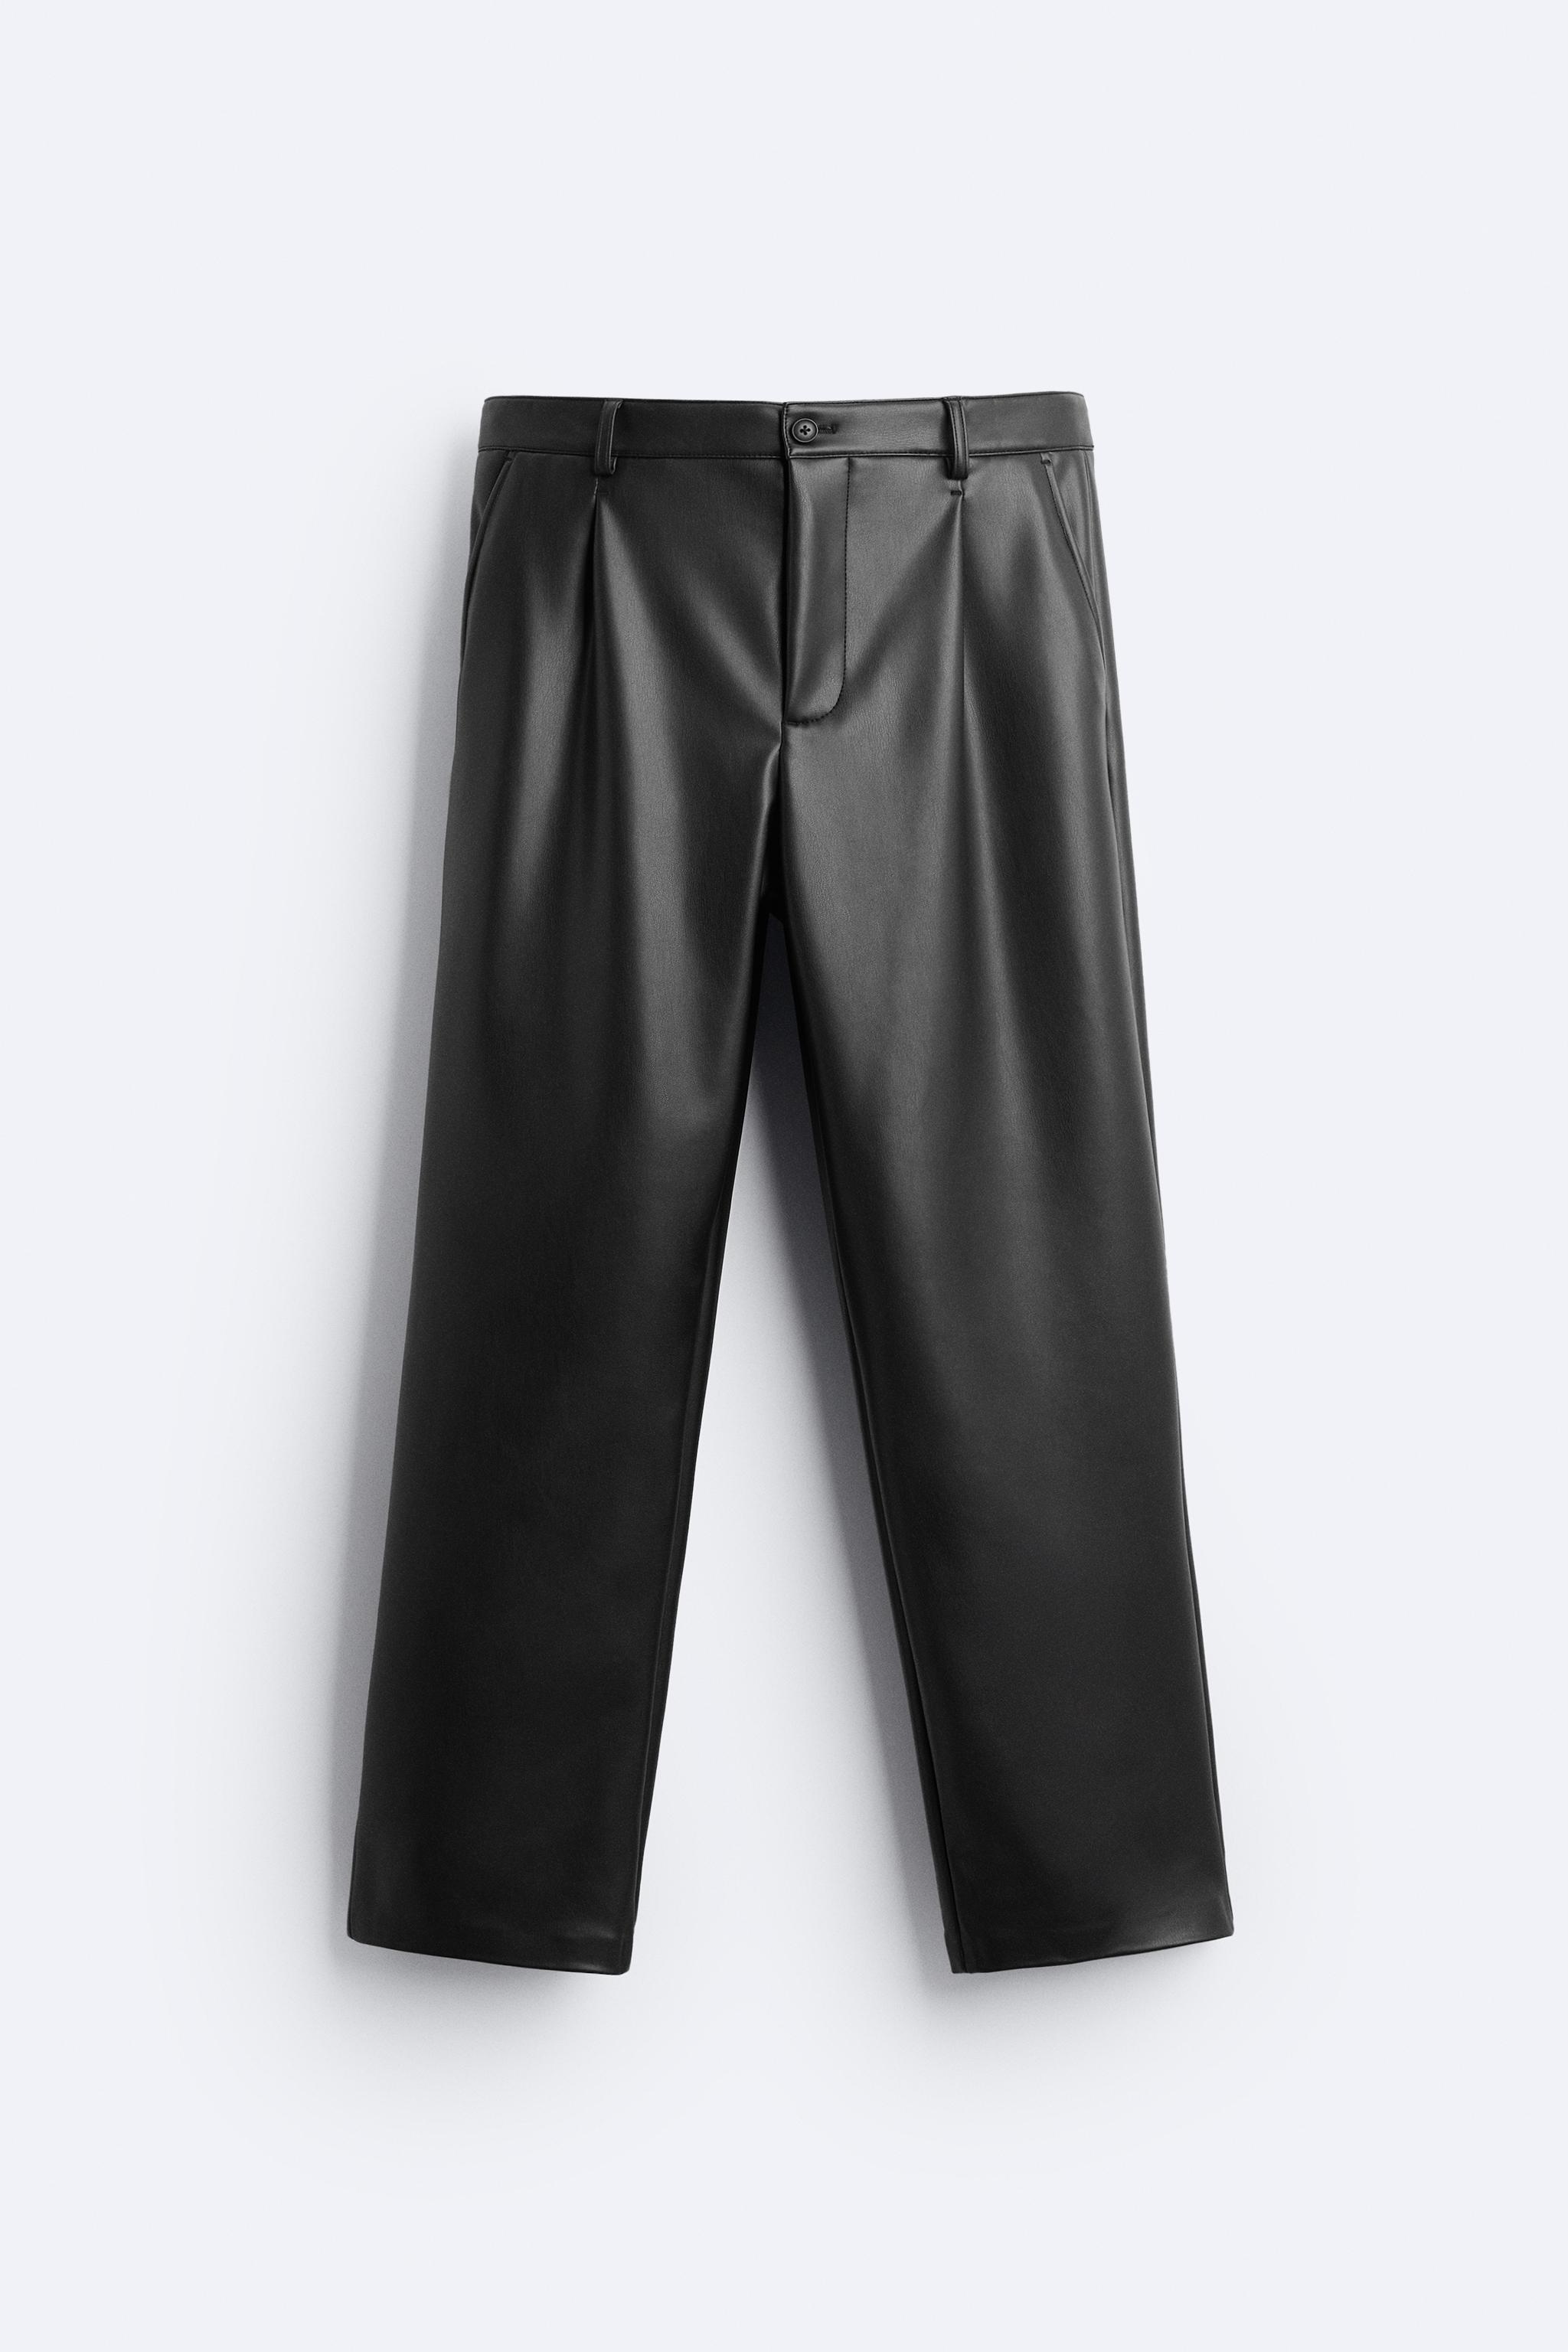 Zara faux leather brown pants  Brown pants, Zara, Clothes design